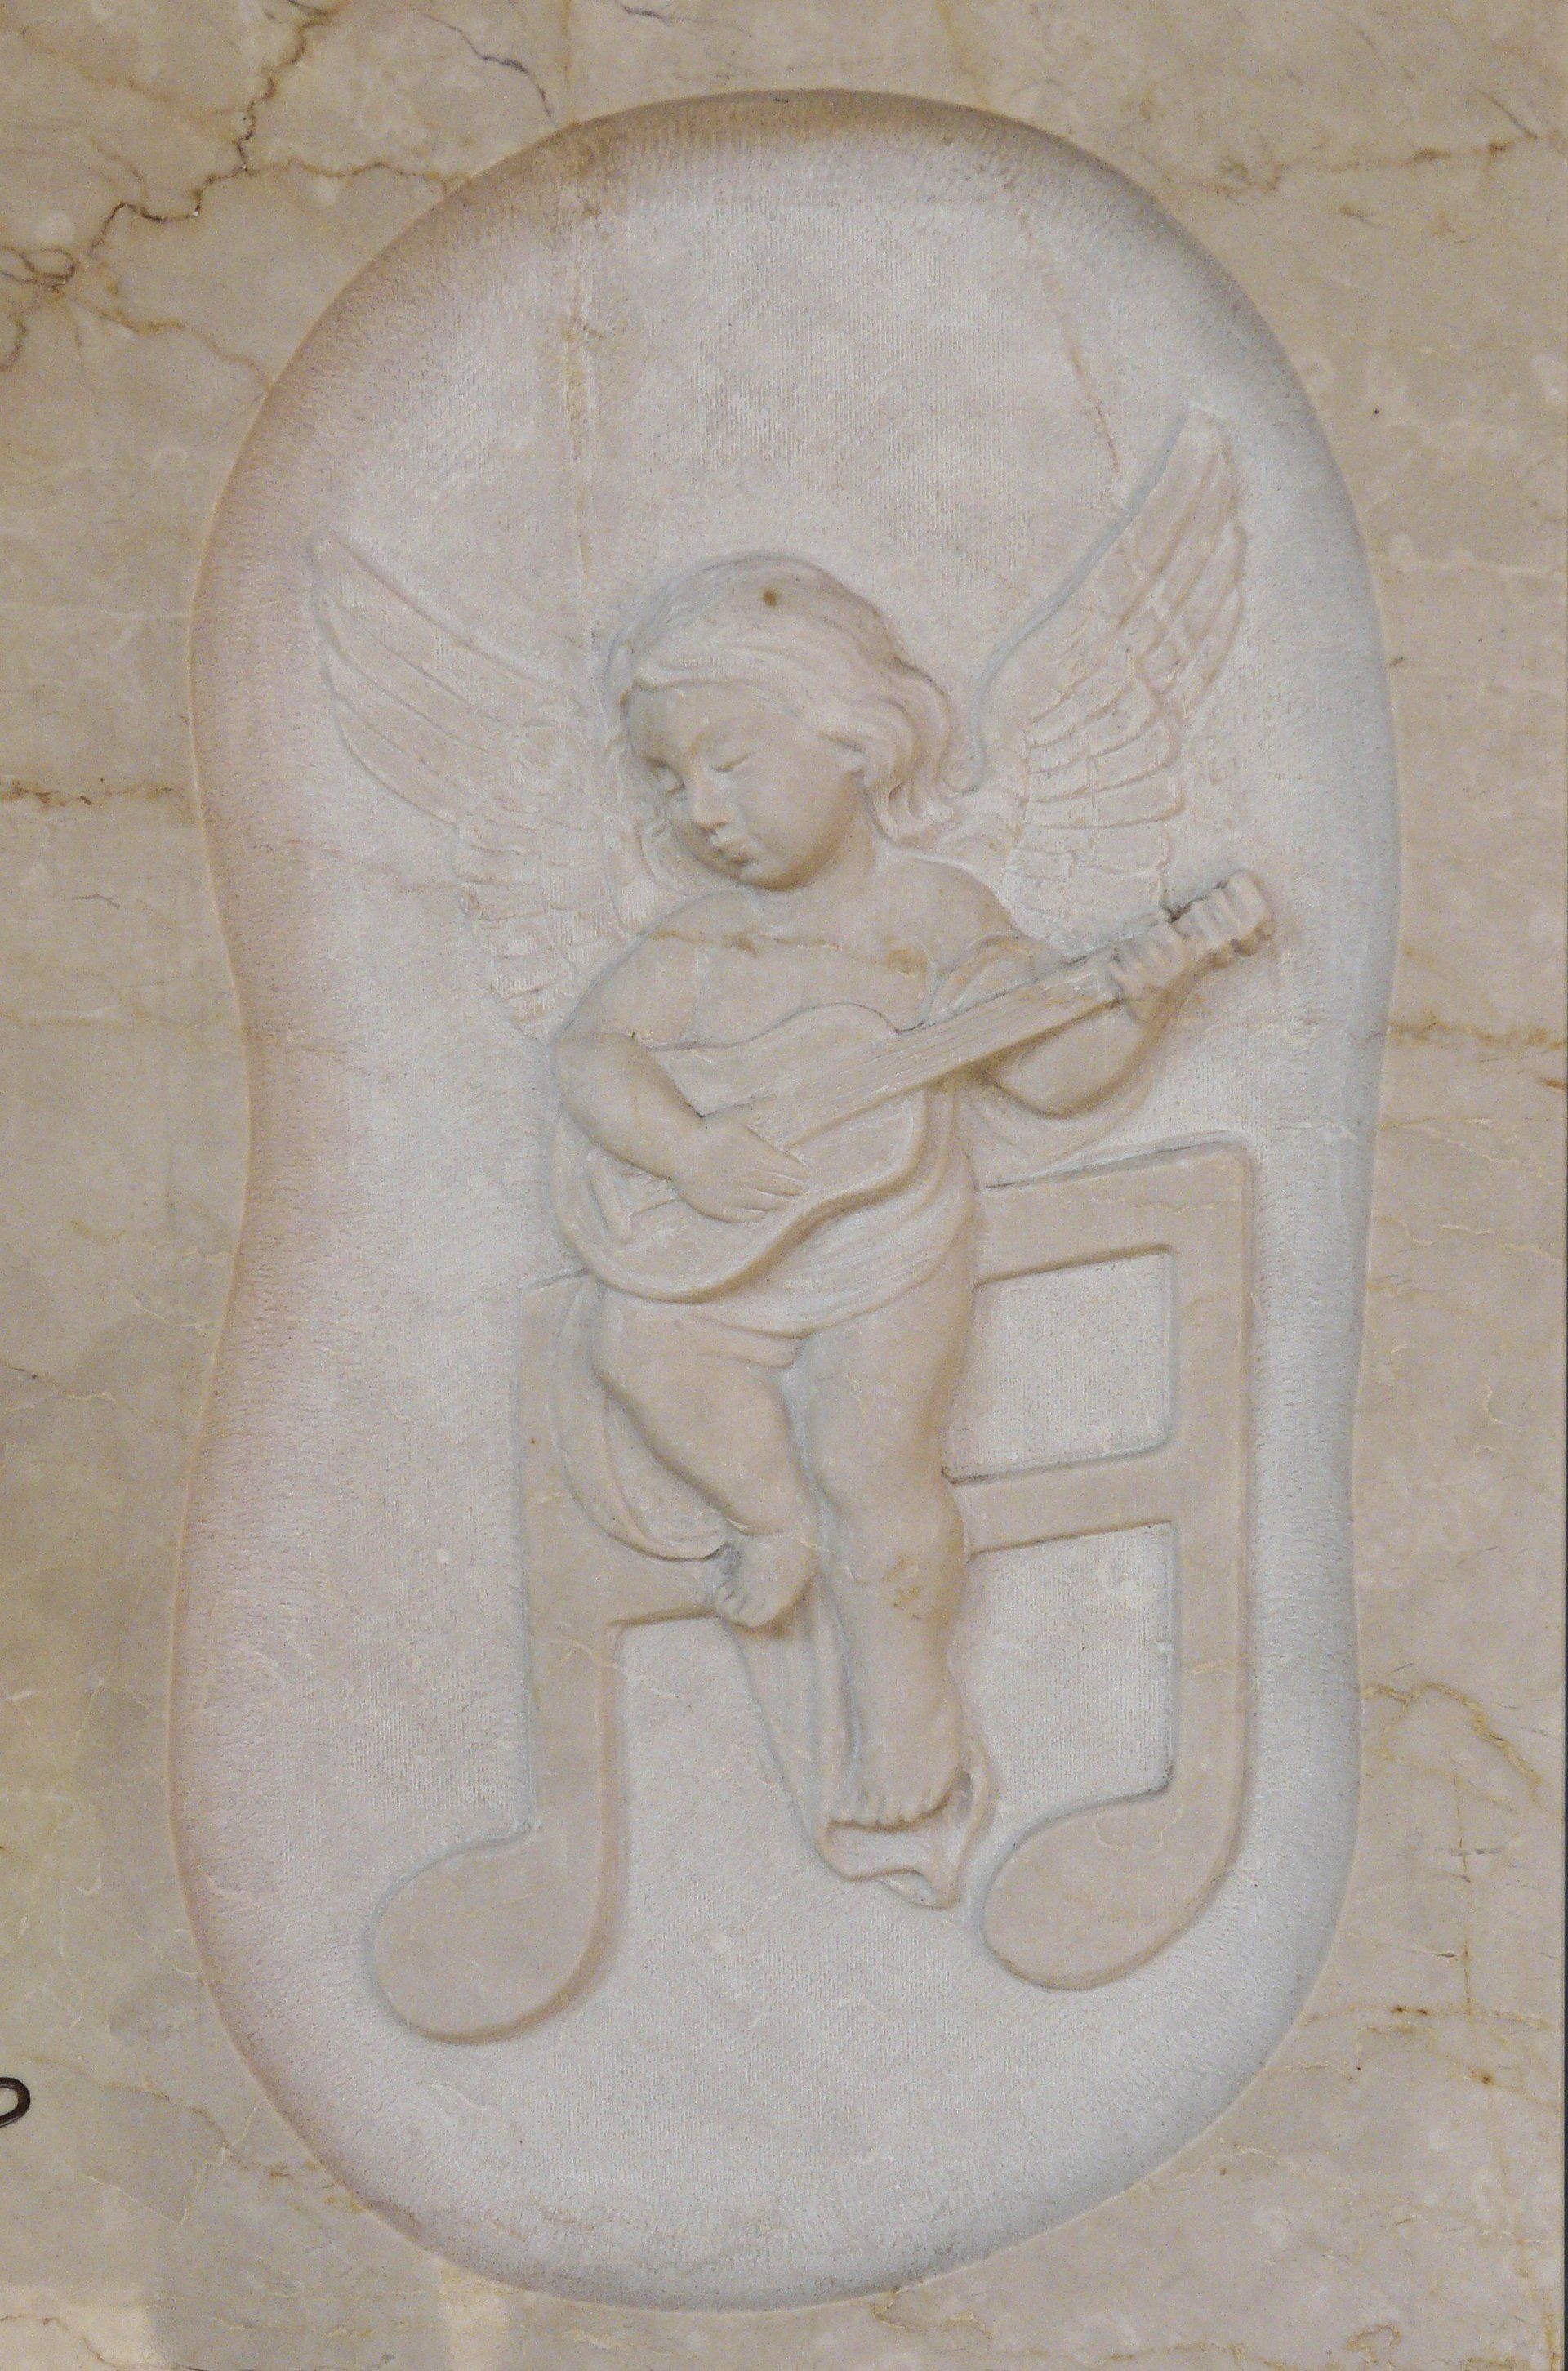 bassorilievo su marmo beige rappresentante un bimbo che suona